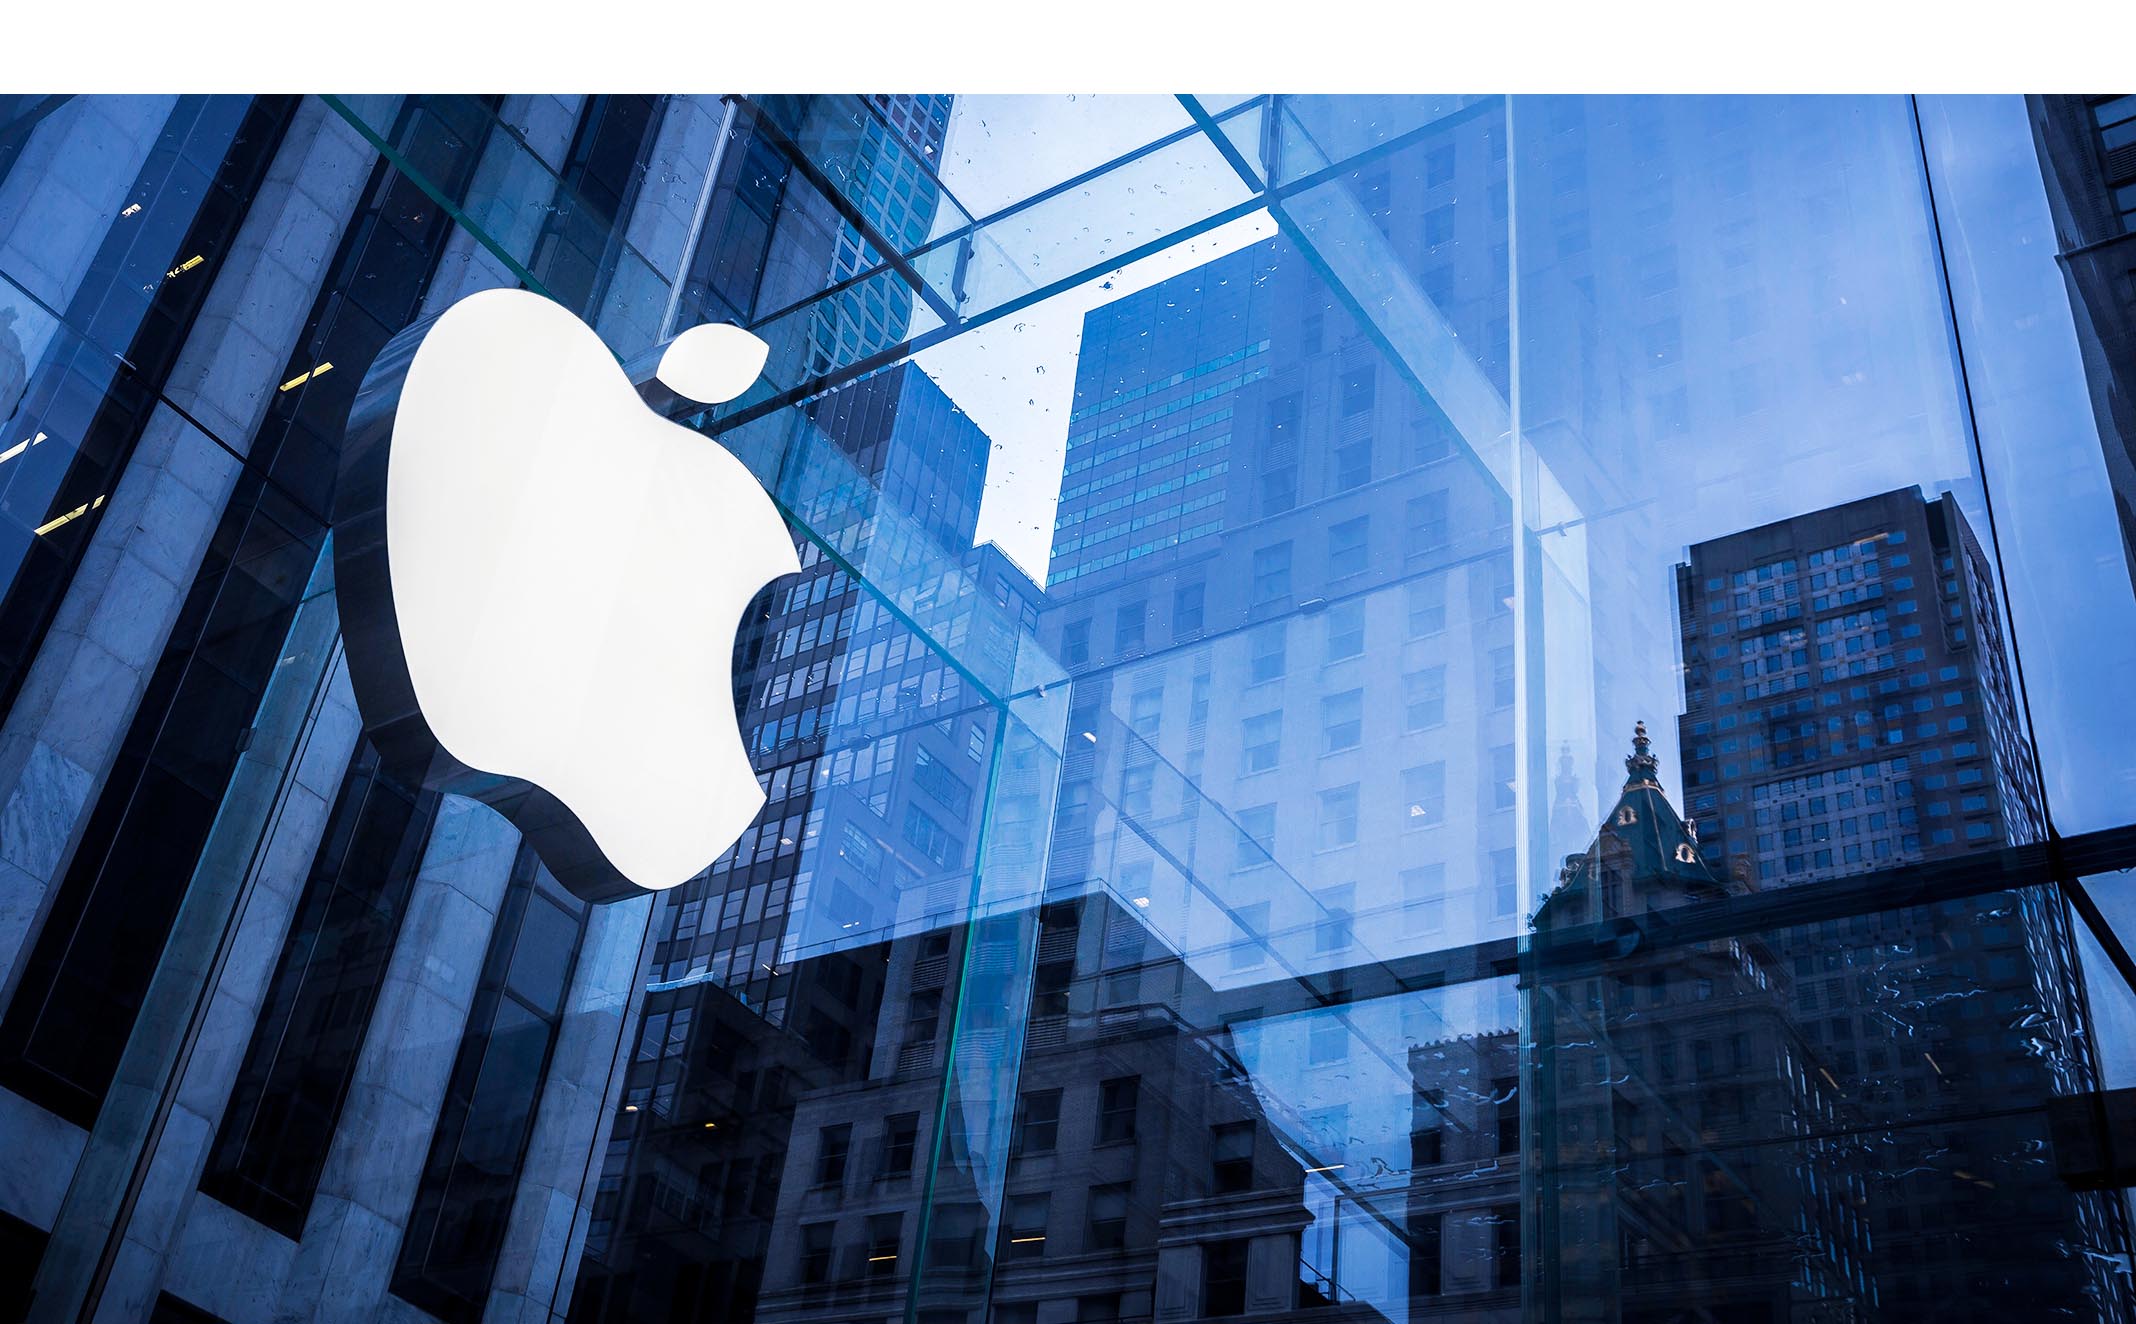 La compañía de la manzana está valorada con el más alto porcentaje de influencia comercial en comparación al año pasado